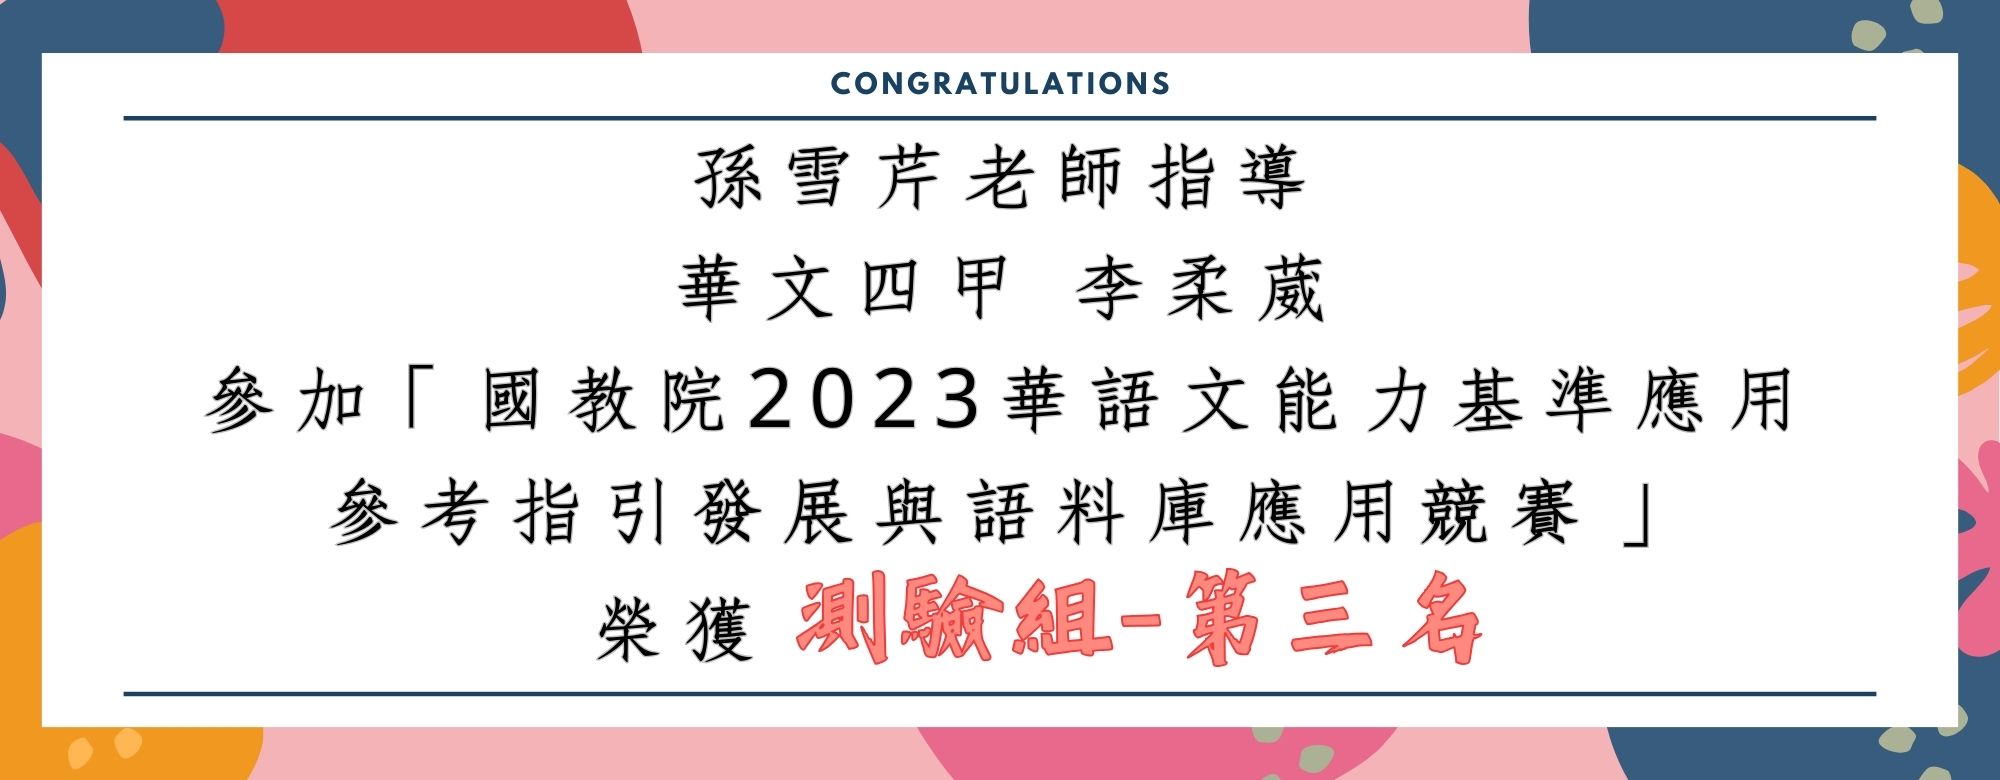 李柔葳_2023 華語文能力基準應用參考指引與語料庫應用競賽測驗組第三名(另開新視窗)